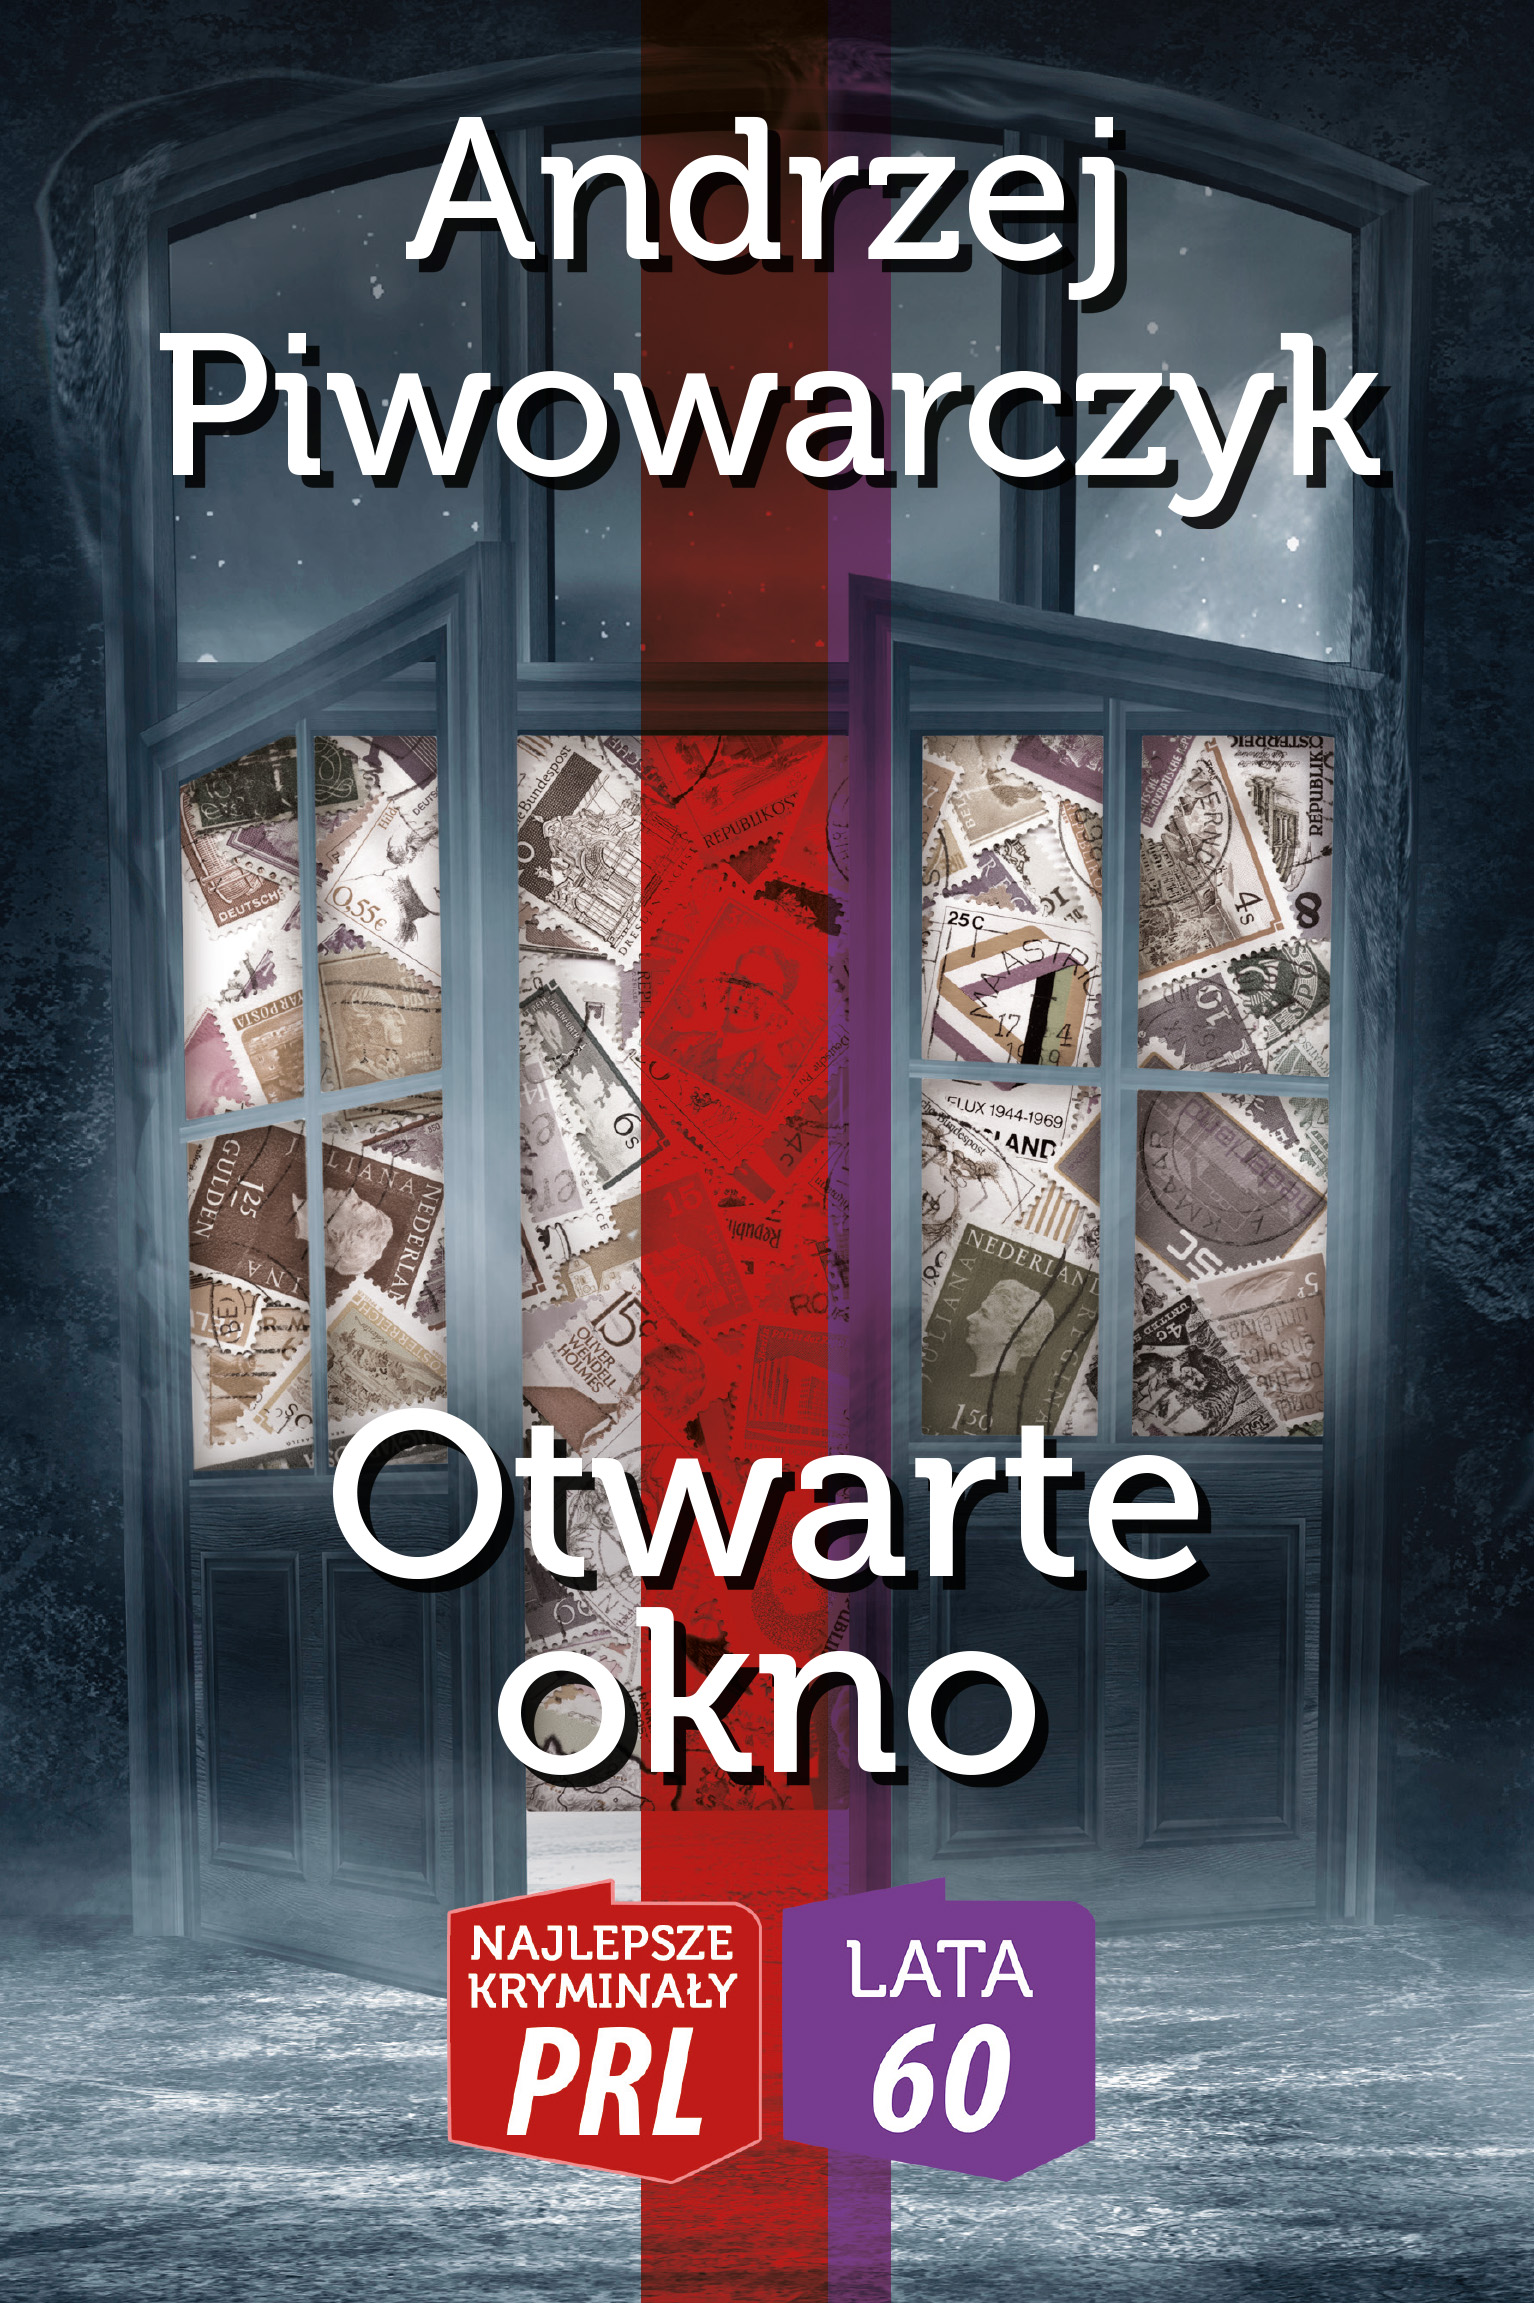 Andrzej Piwowarczyk, Otwarte okno (1961/68)